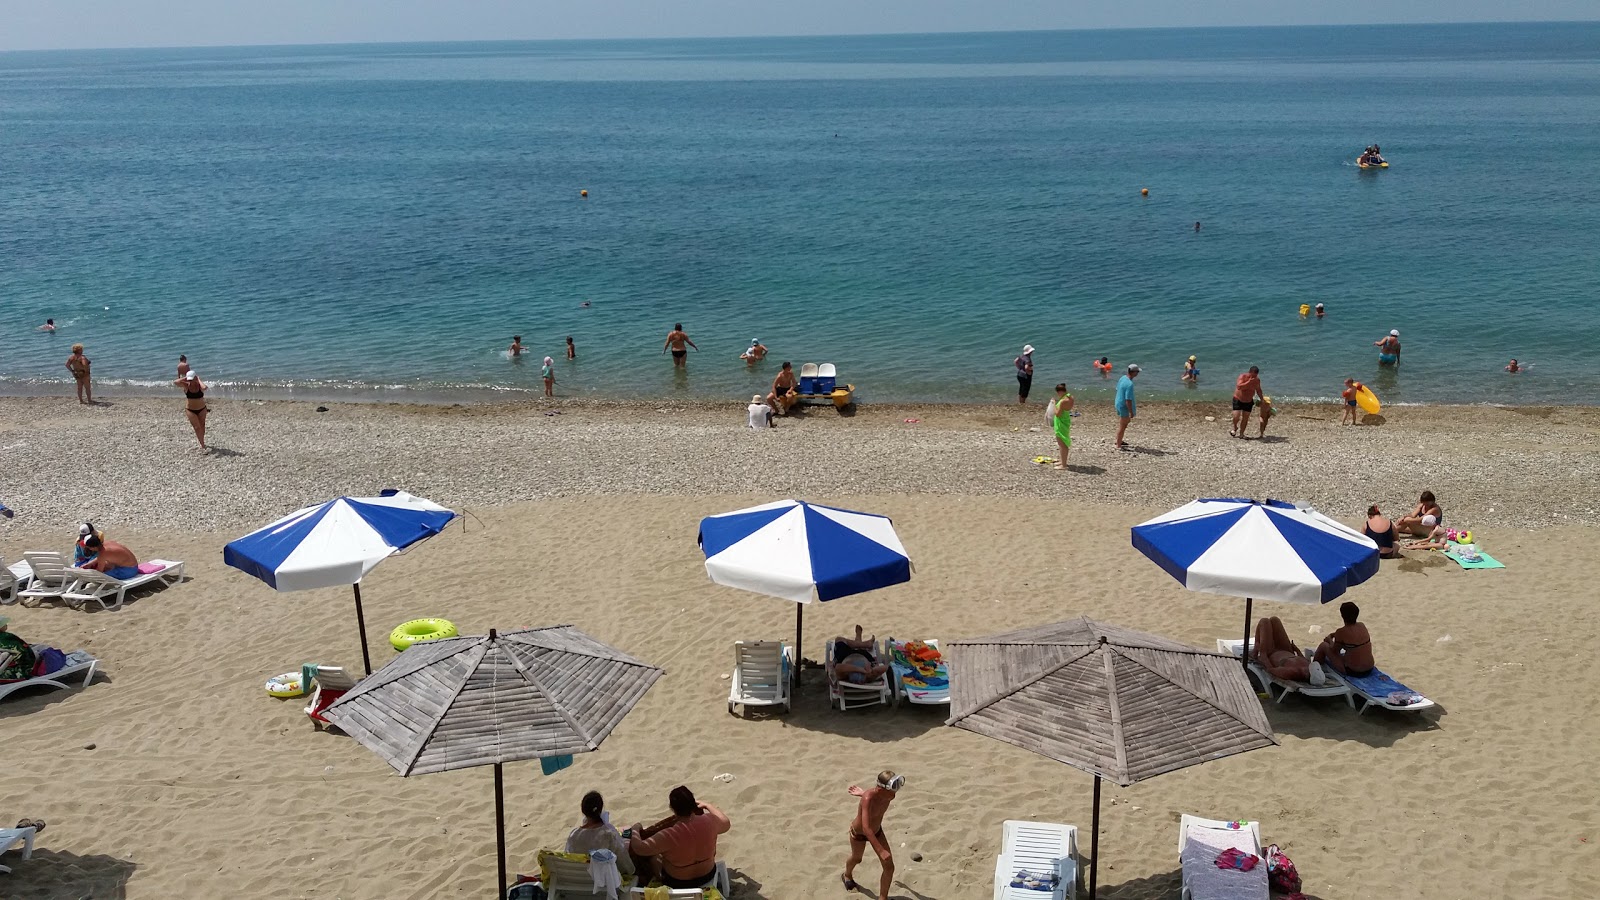 Miussera beach'in fotoğrafı - rahatlamayı sevenler arasında popüler bir yer